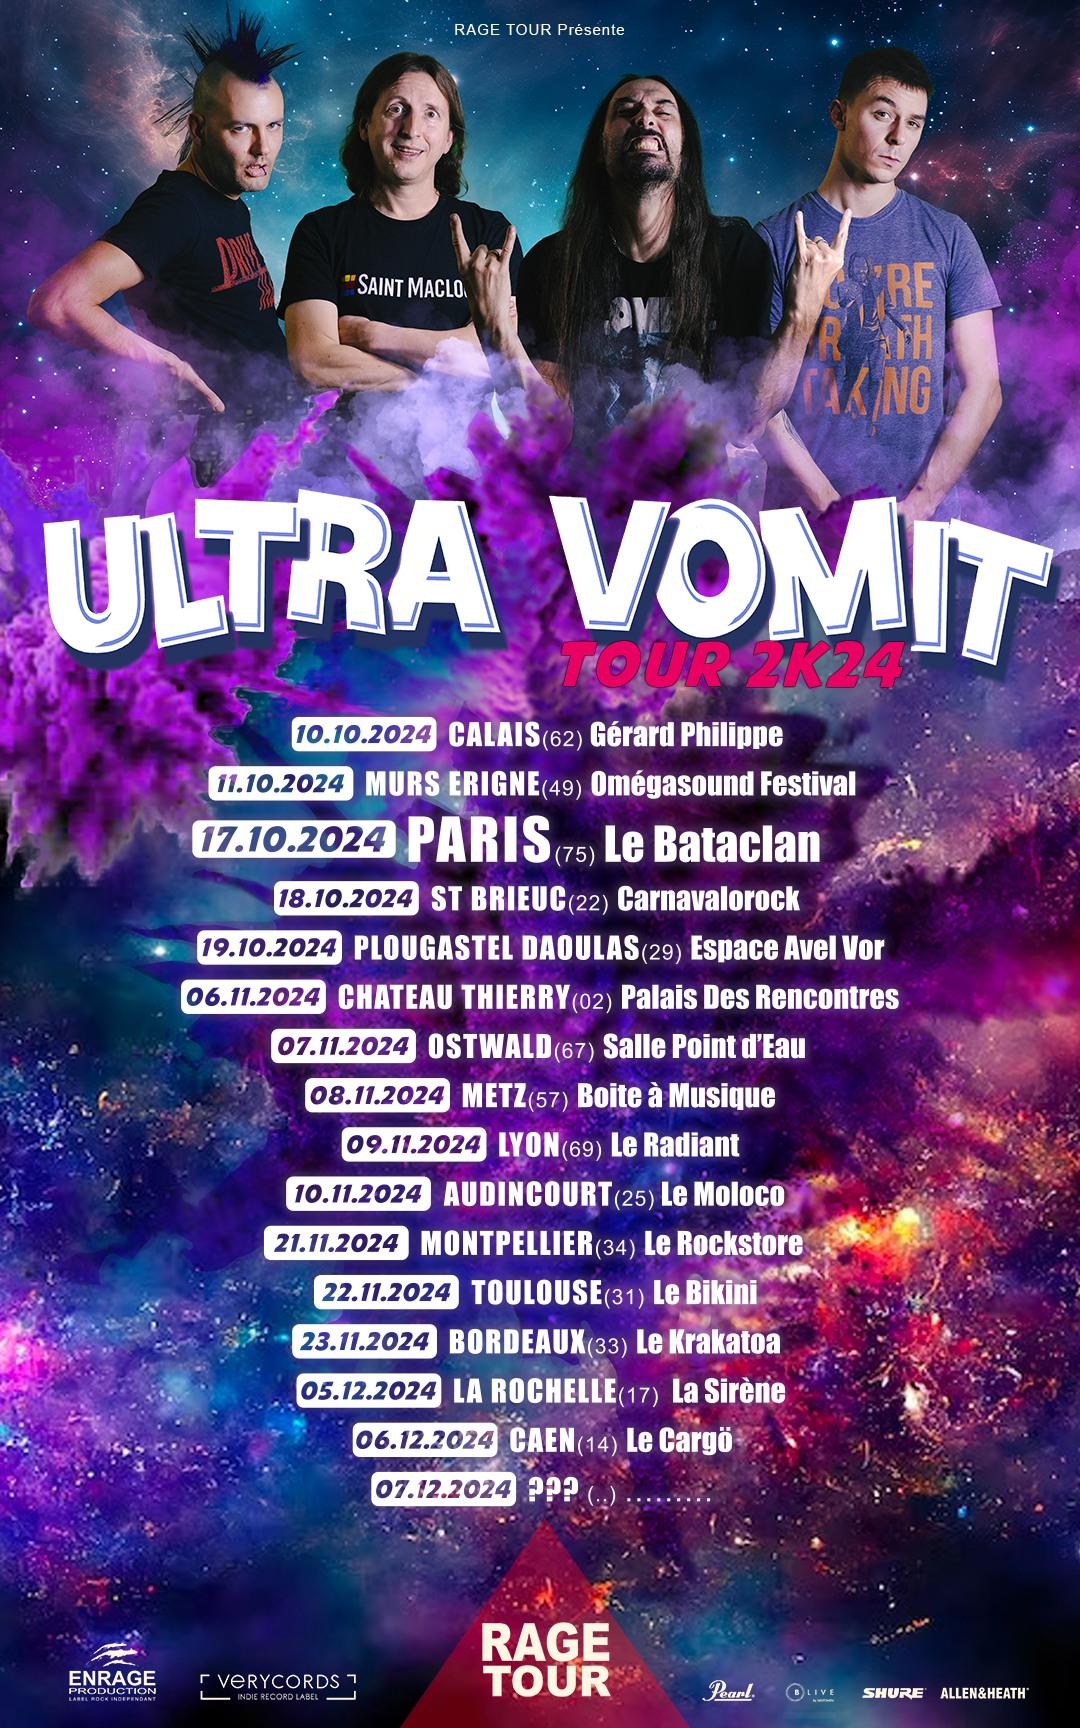 Ultra vomit tour 2k24